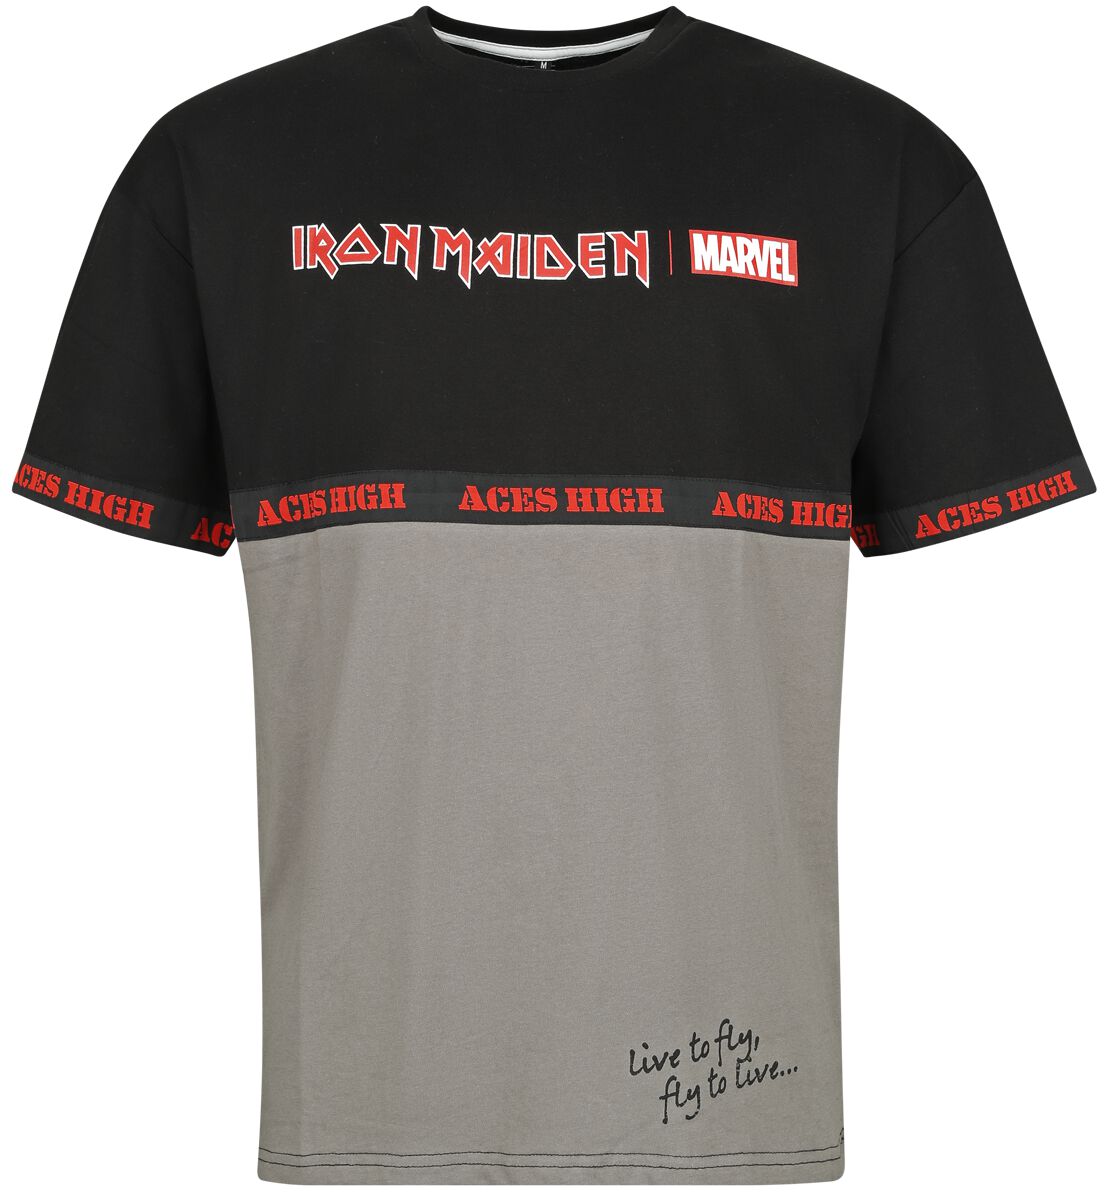 Iron Maiden Iron Maiden x Marvel Collection - Aces High War Machine T-Shirt schwarz grau in XL